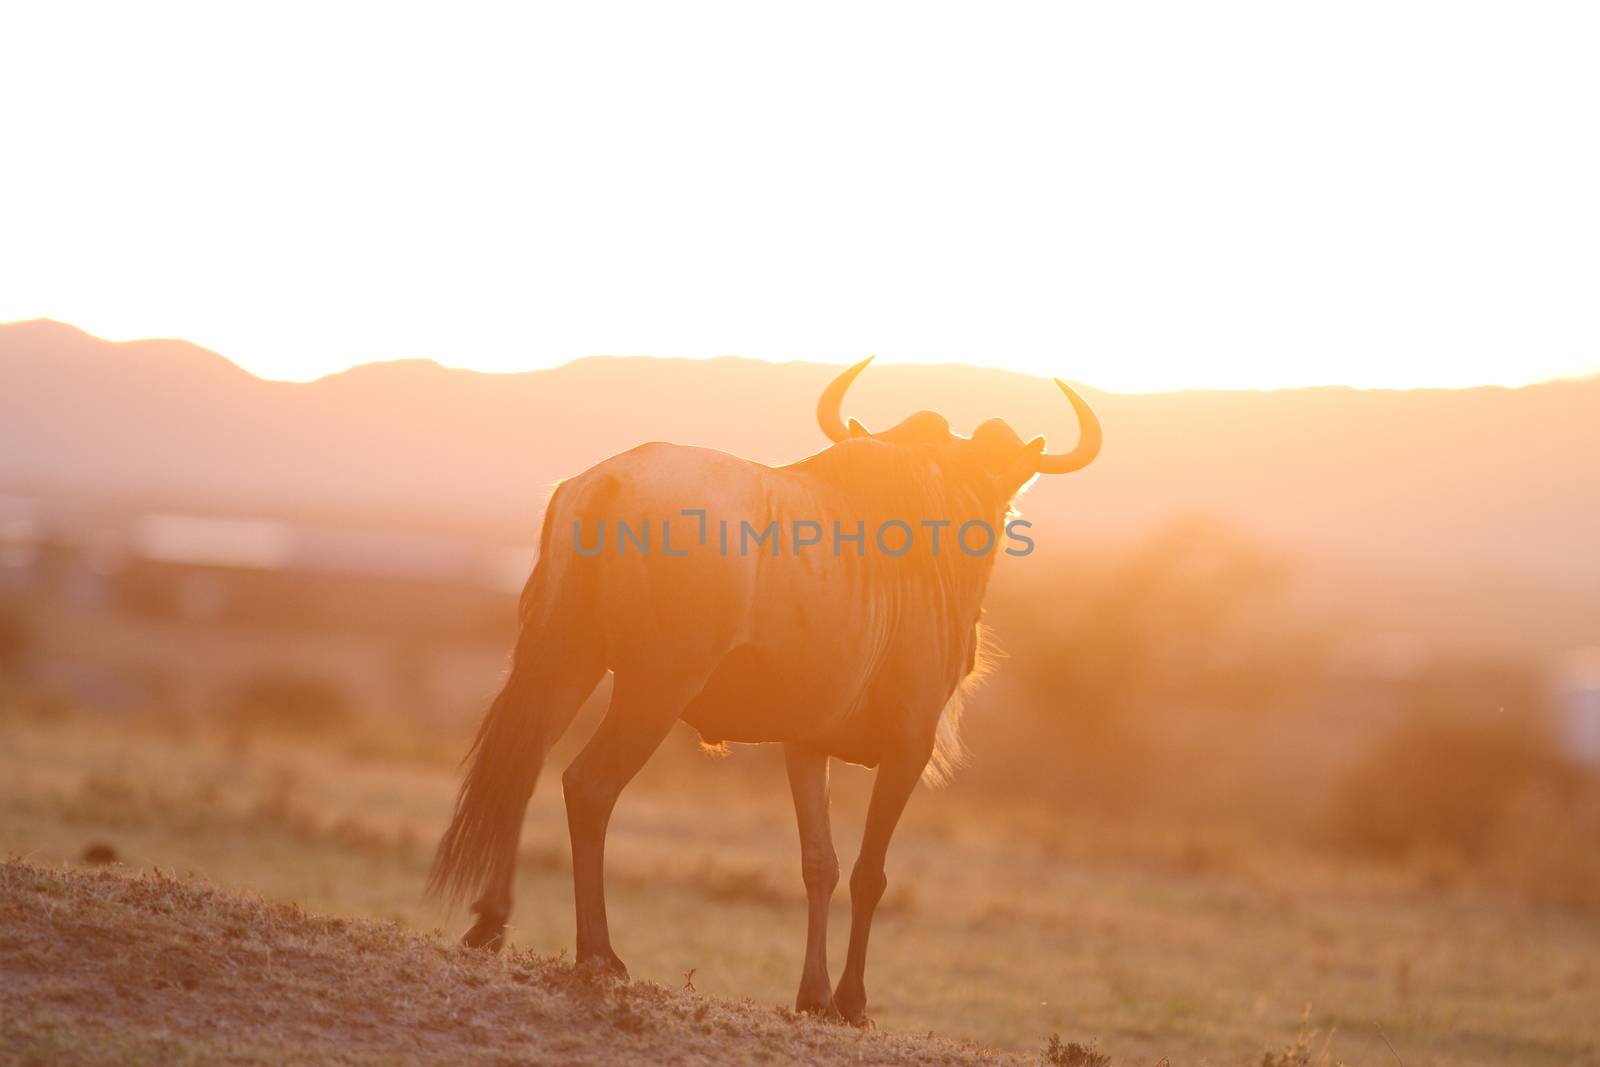 Wildebeest in the wilderness by ozkanzozmen